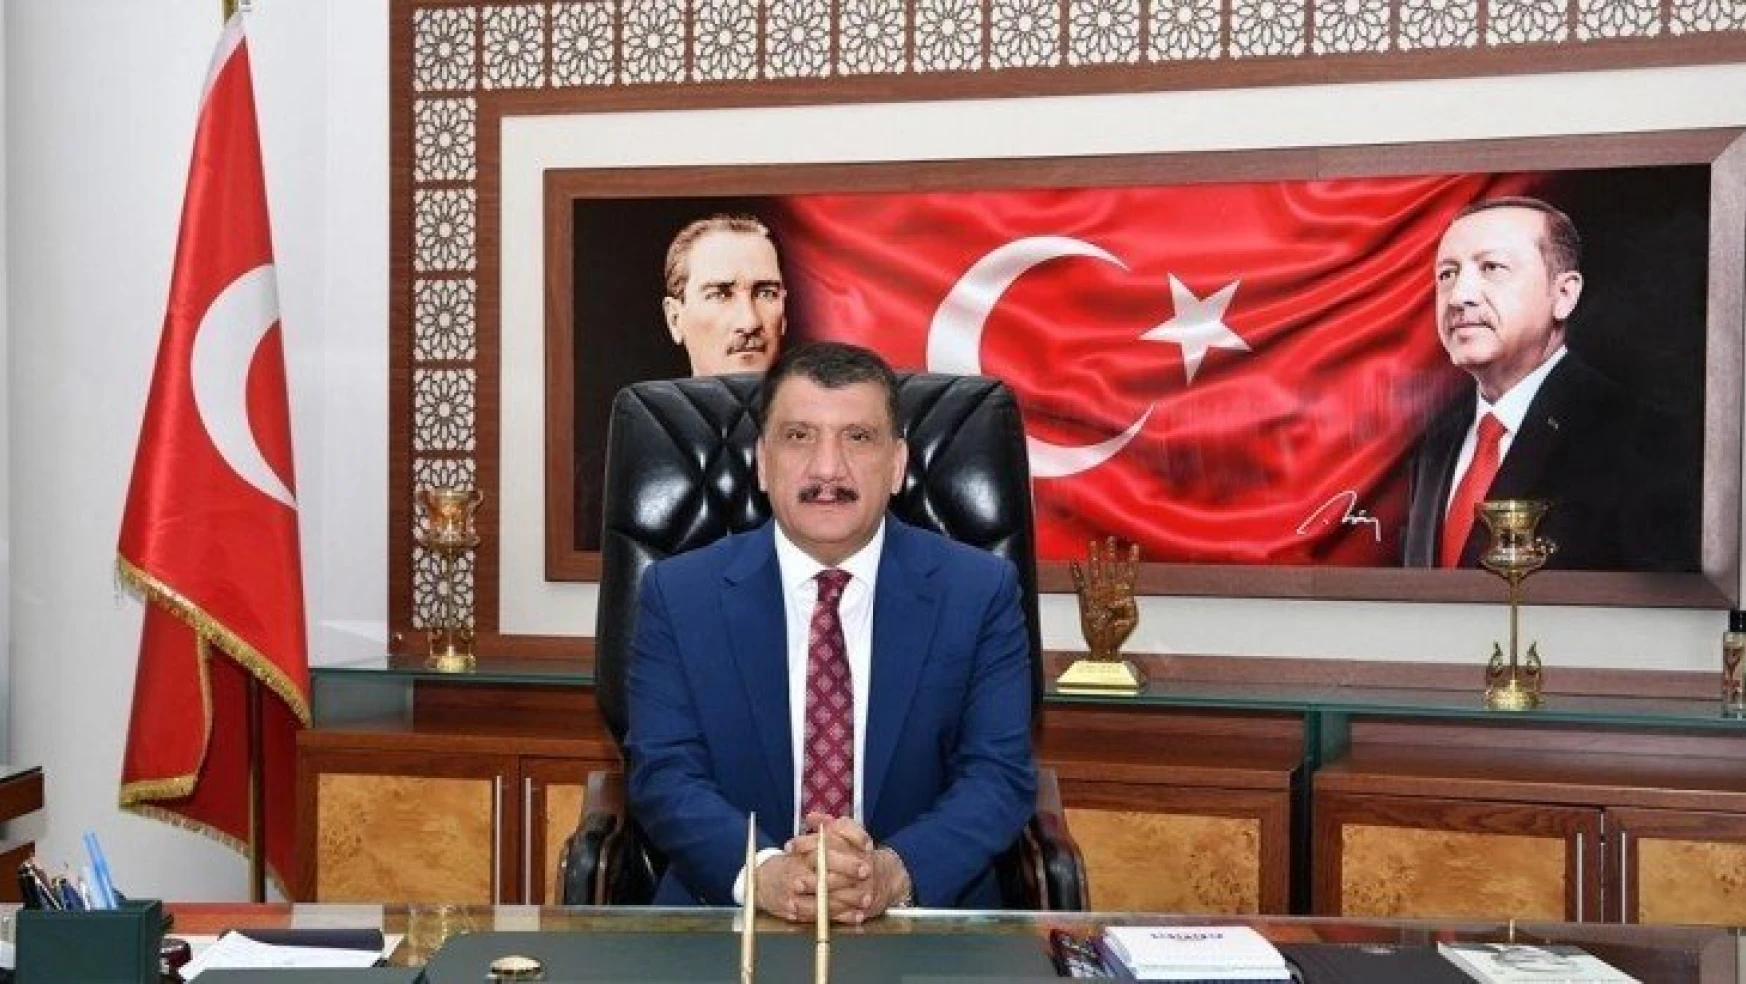 Başkan Gürkan'dan 19 Mayıs Mesajı